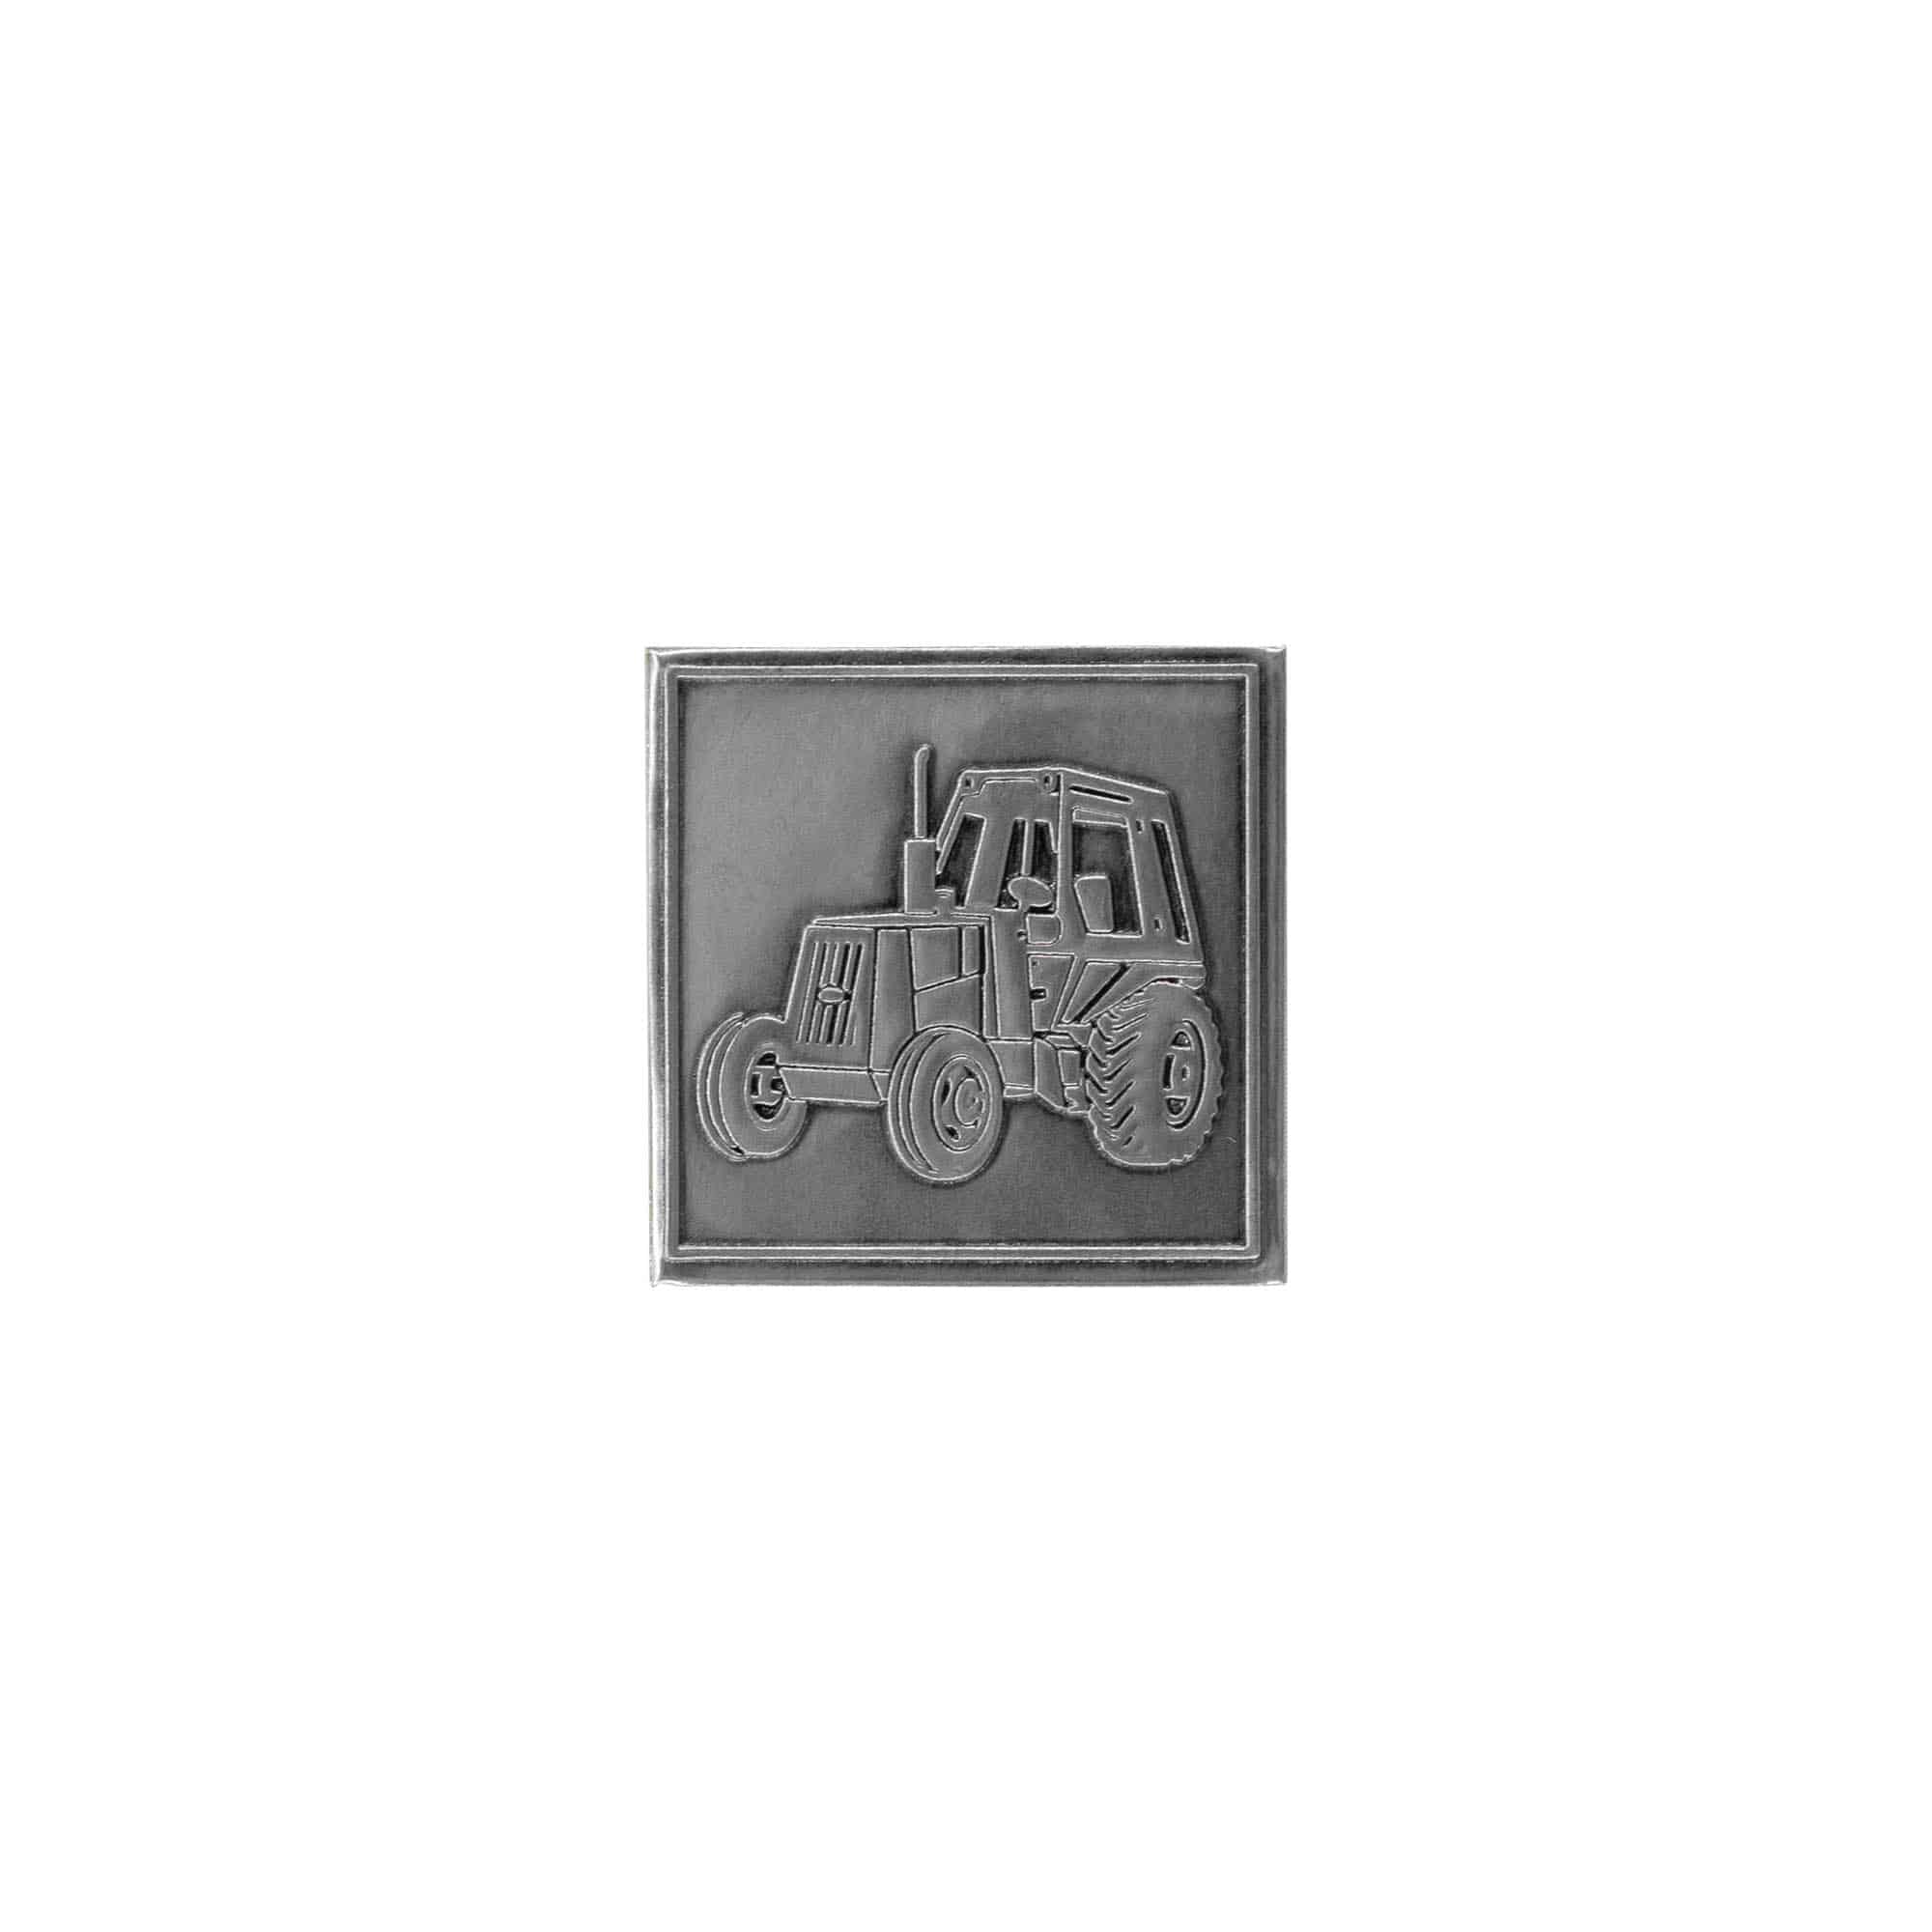 Etykieta cynowa 'Traktor', kwadratowa, metal, kolor srebrny